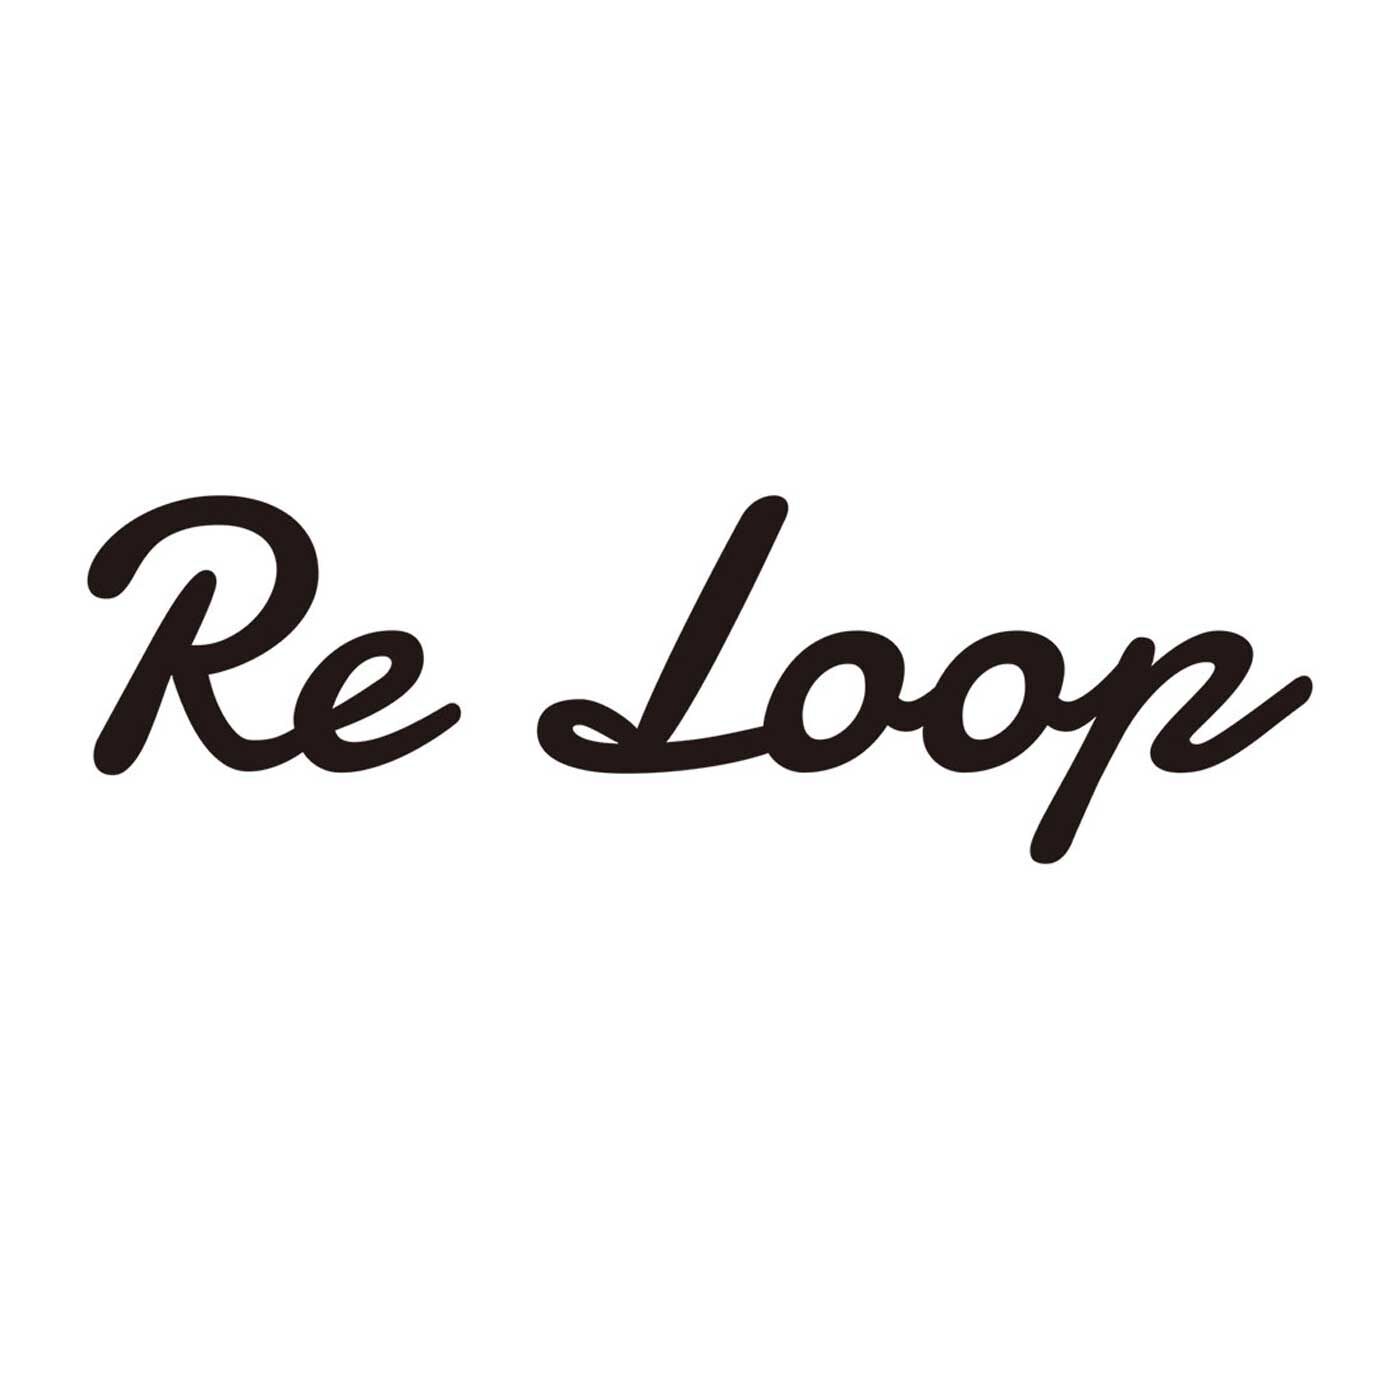 フェリシモの雑貨 Kraso|ReLoop スペックダイ 厚手のコットンソックス|【Re Loop】奈良の老舗靴下工場「SOUKI」のブランドです。人と環境にやさしい素材を使い、代々受け継がれてきた技術や知識を次世代に引き継ぐことを使命に生まれました。使用している「リサイクル糸」は、明治大正時代から続けられてきた技術をルーツとする、紡績方法でつくられたもの。未利用のまま廃棄される繊維原料や、紡績、織布工場で発生する糸くず、布地などを集めて綿にほぐしなおした原料を使用して、糸に紡いだもの。空気を多く含んでいるので、「ナチュラルなふくらみ」と「かさ高性」があります。そんなリサイクル糸を使い、希少な編み機でていねいに編み上げられた「Re Loop」の靴下は、ちょっぴり特別。それでいて毎日履くのにぴったりの相棒的存在です。